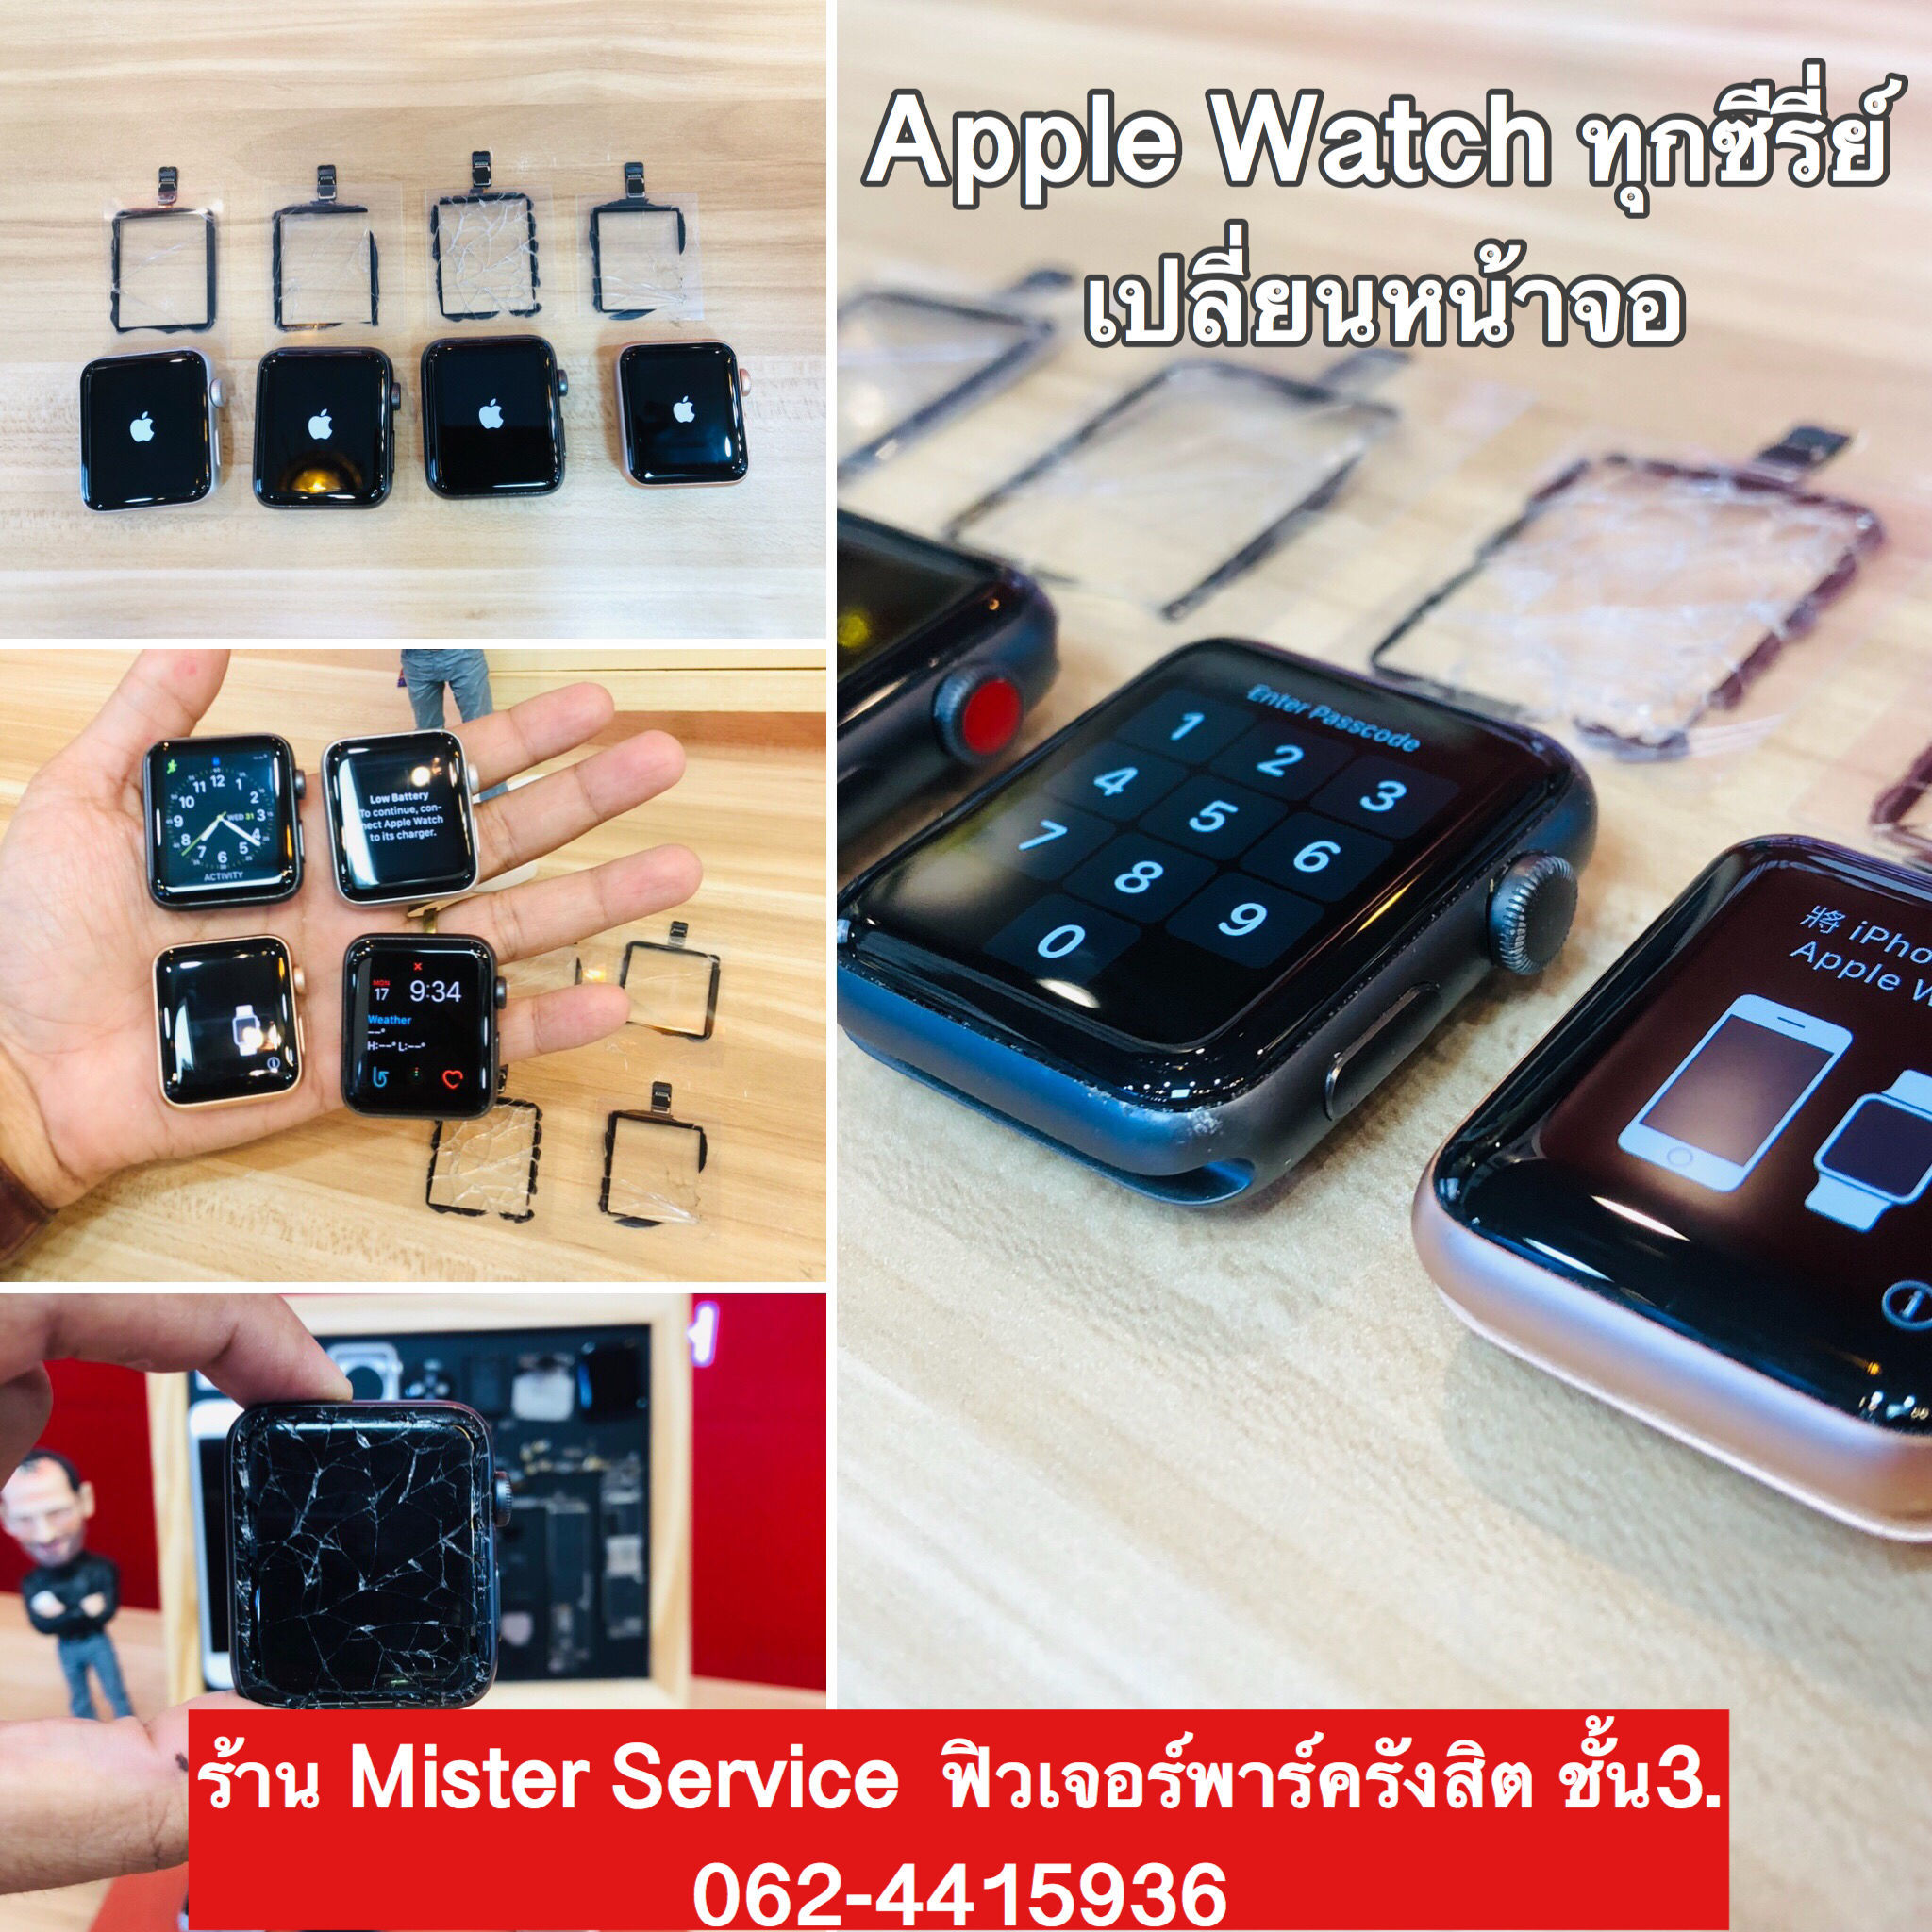 ร้านซ่อมแอปเปิ้ลวอชฟิวเจอร์รังสิตปทุมธานี ศูนย์ไอแคร์ไม่รับซ่อมแอปเปิ้ลวอชแต่เรารับซ่อมครับ 0624415936 applewatchหน้าจอแตก เปลี่ยนแบตเตอรี่ Mister Service